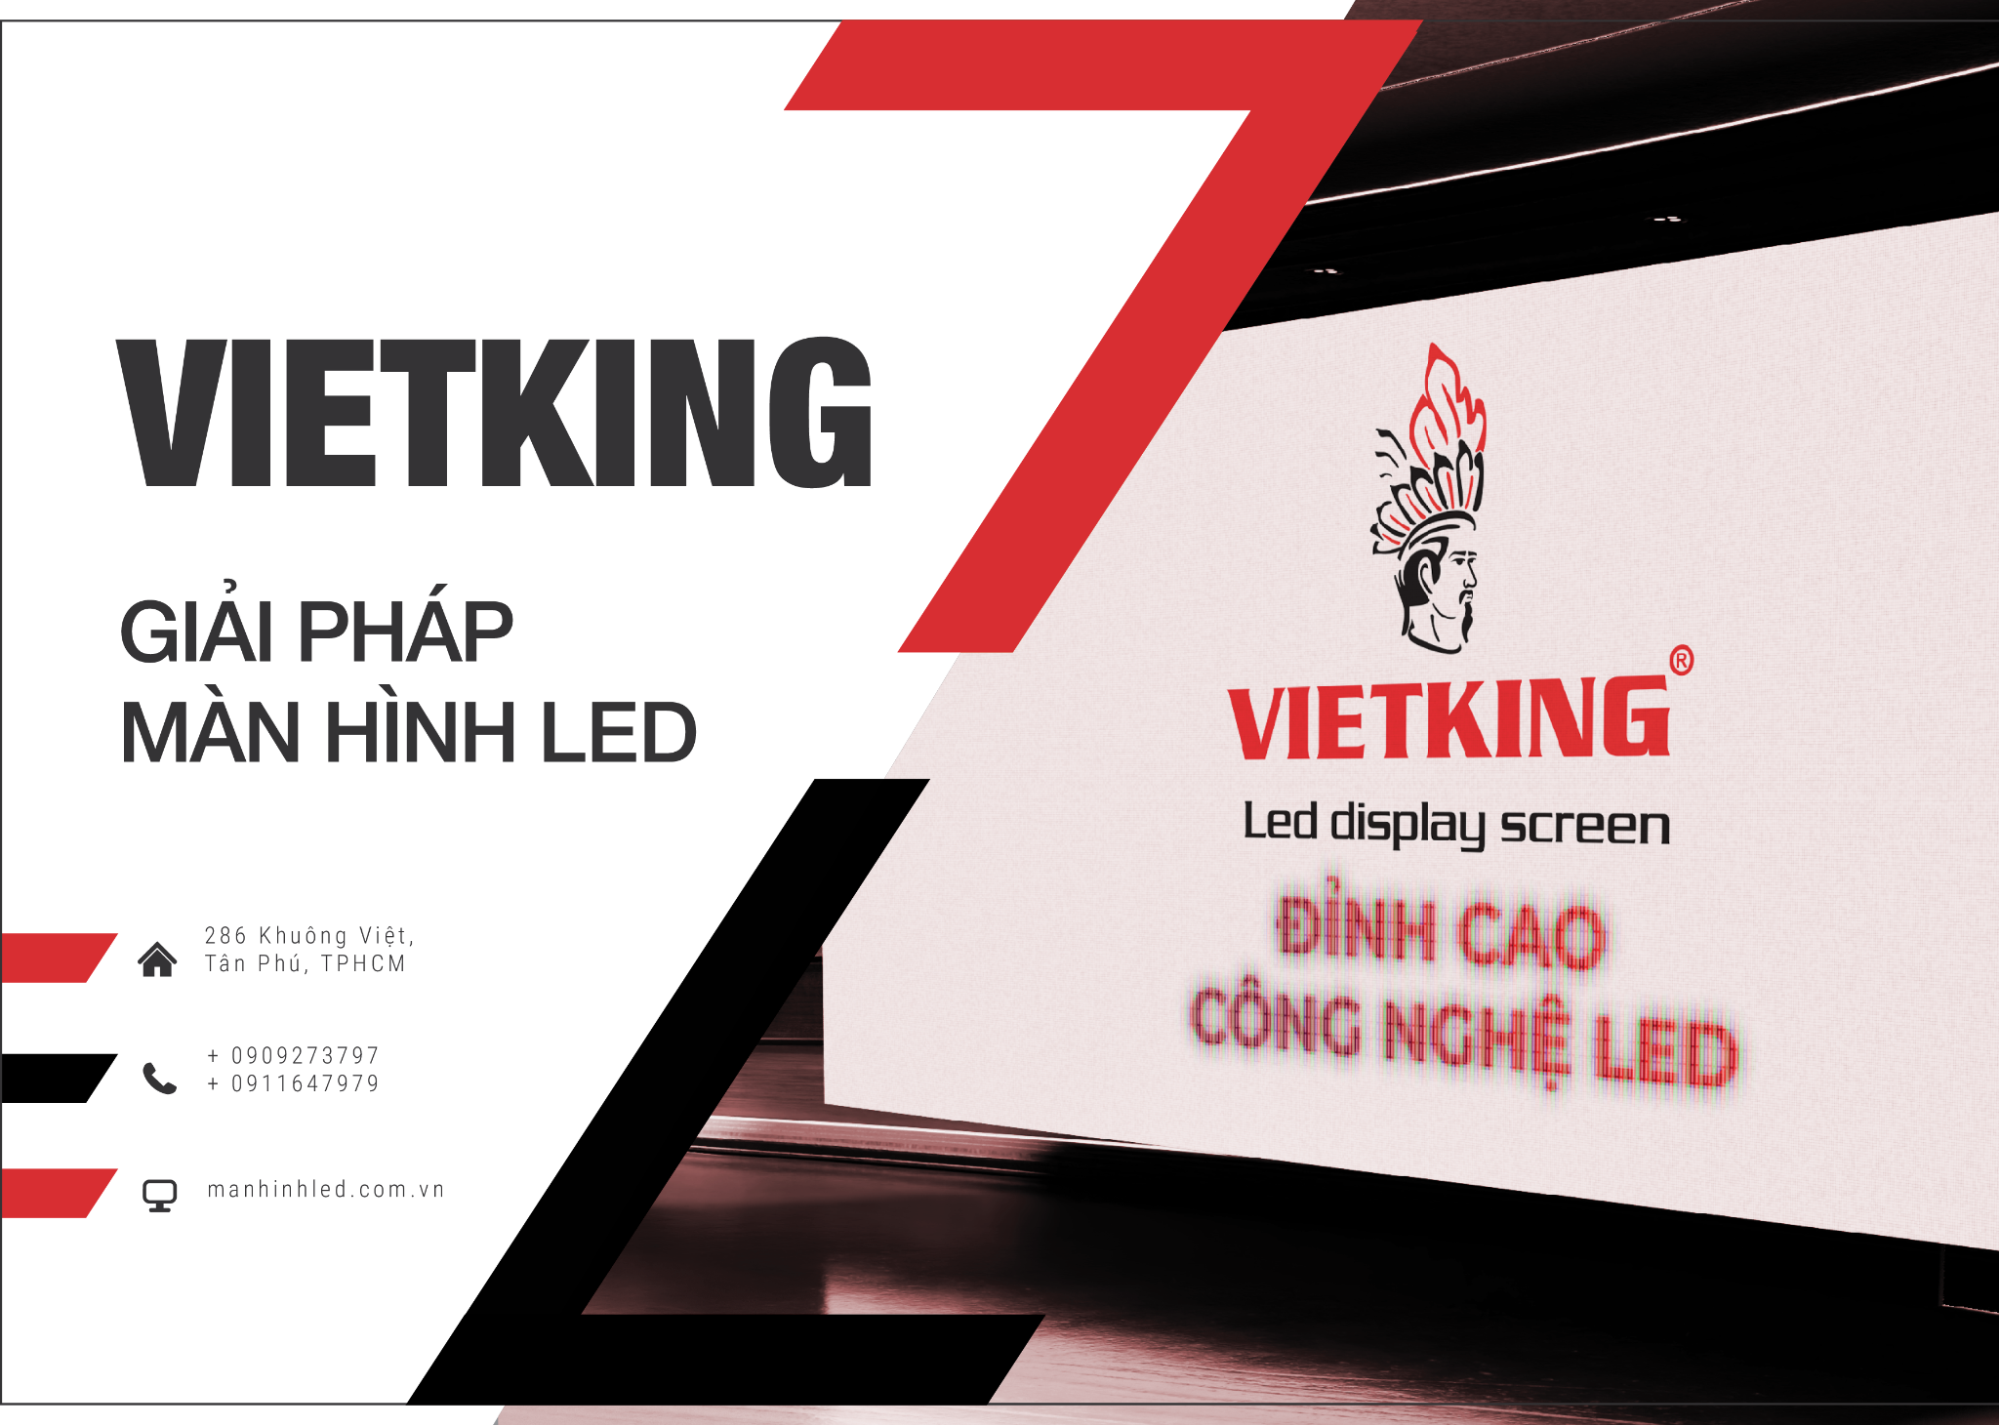 VIETKING - Đơn vị phân phối, cho thuê và sửa chữa màn hình LED uy tín